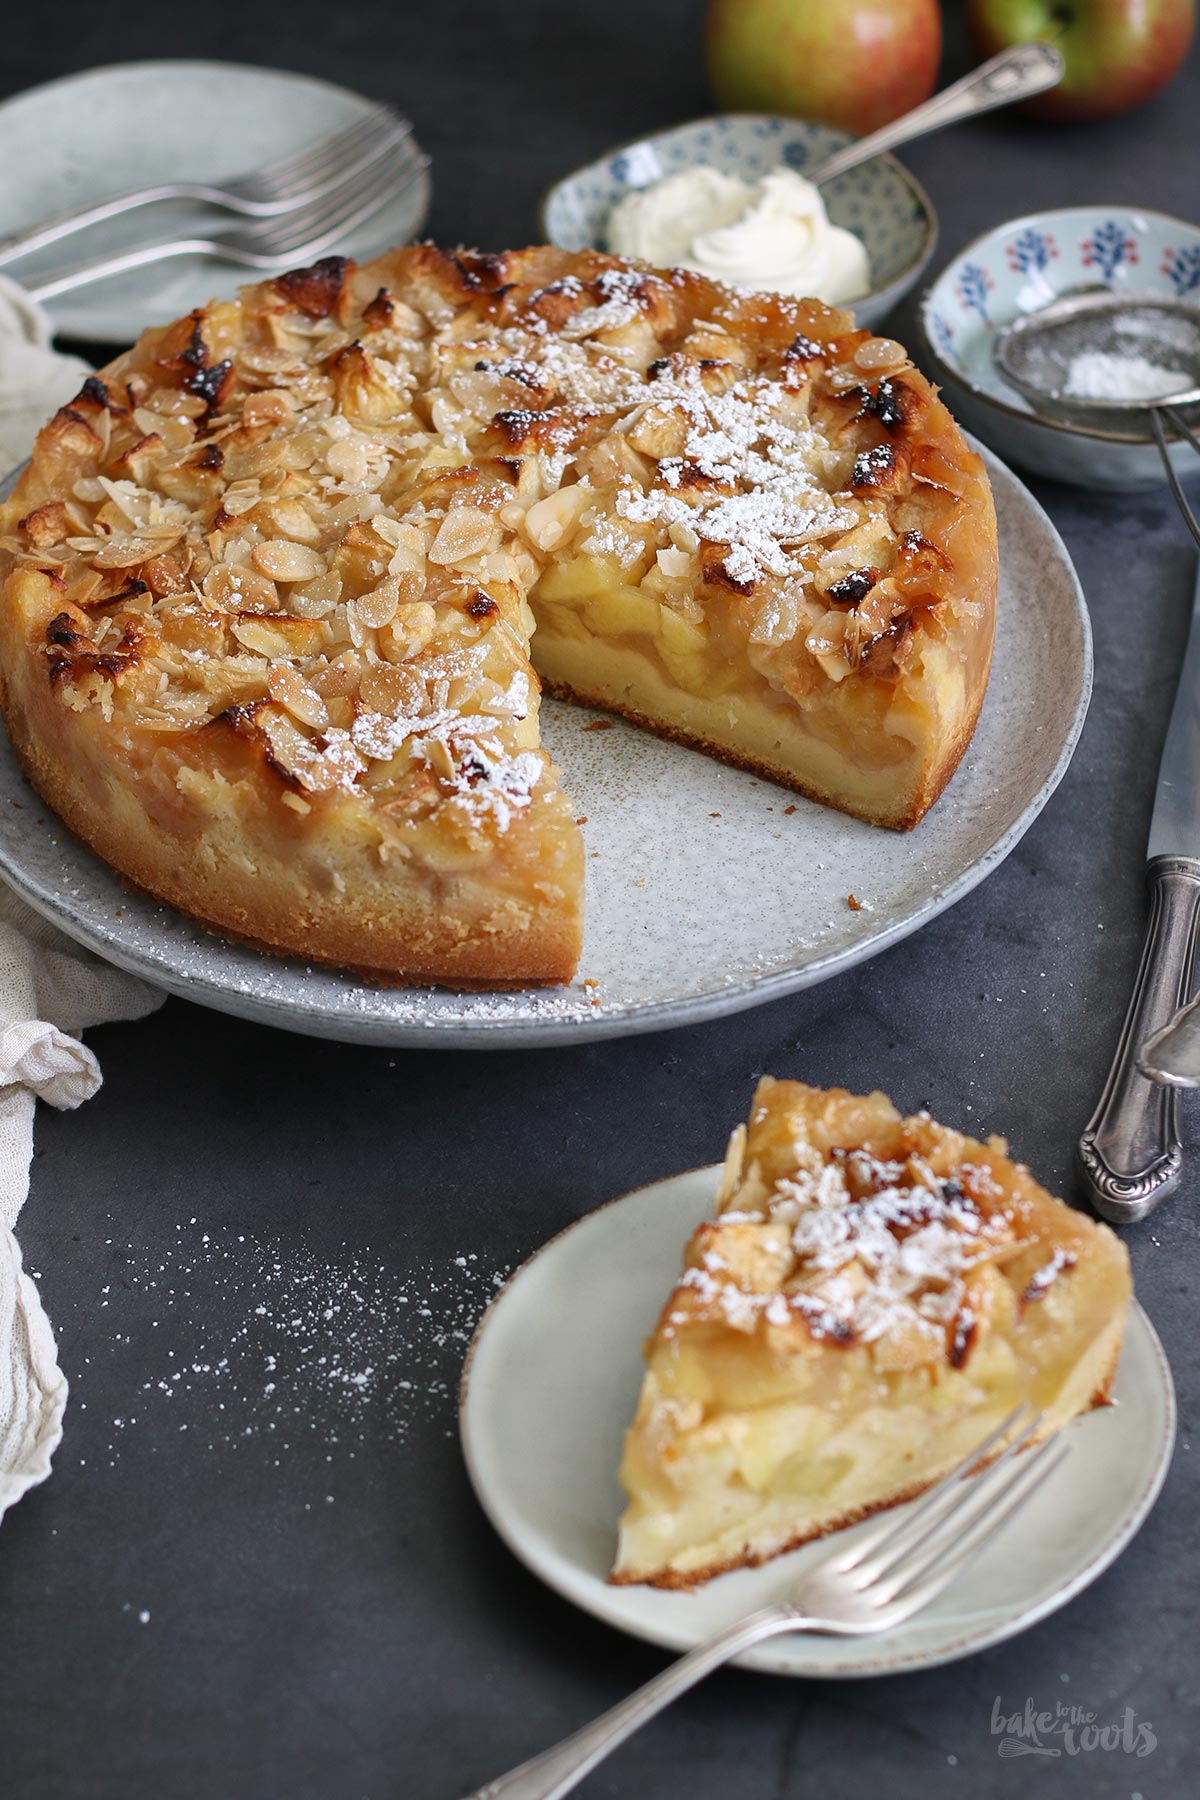 Großmutters Französischer Apfelkuchen | Bake to the roots